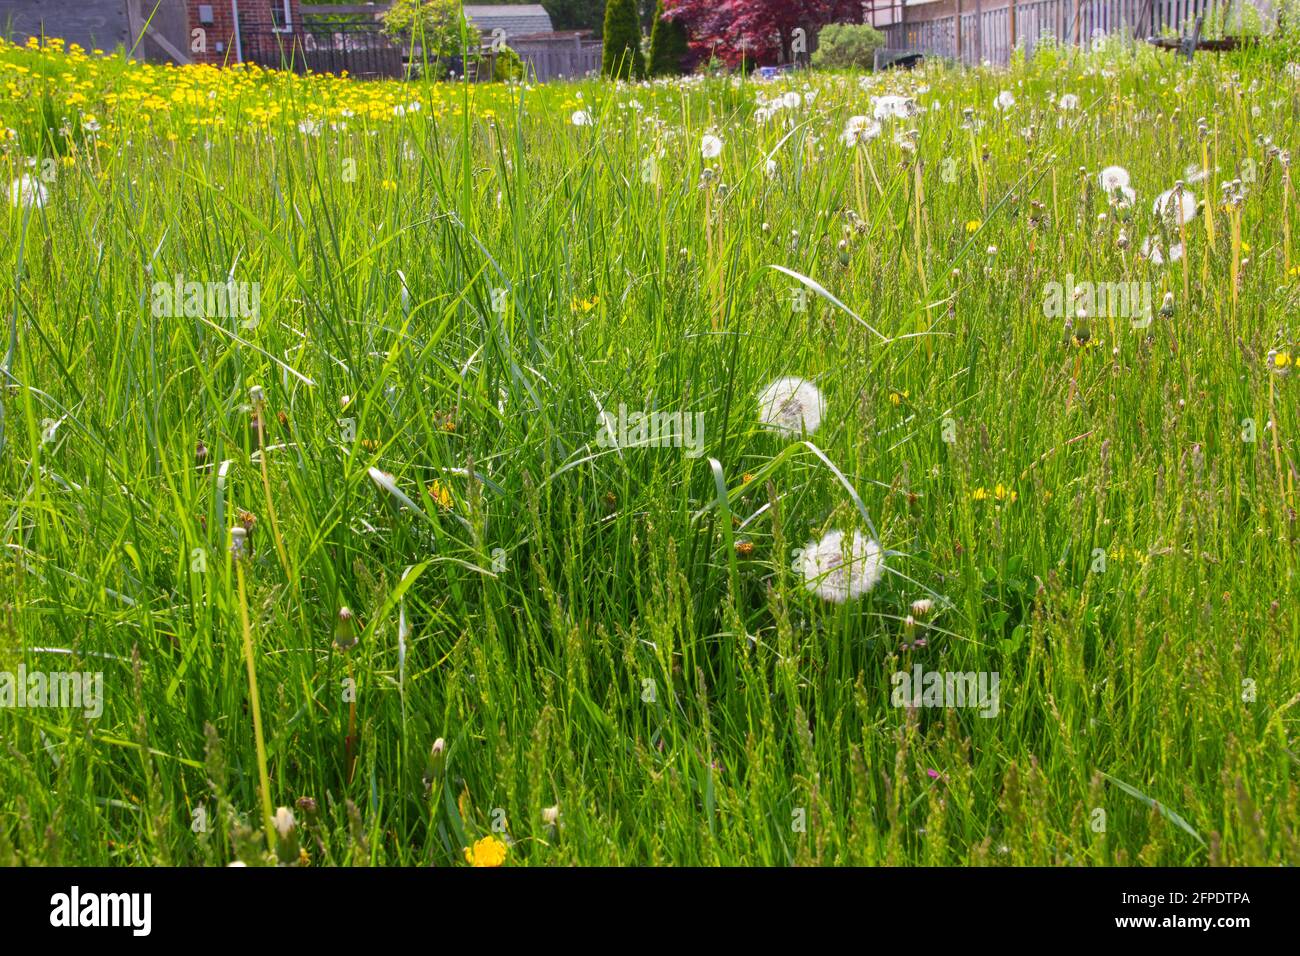 Dandelions in an unkempt lawn Stock Photo